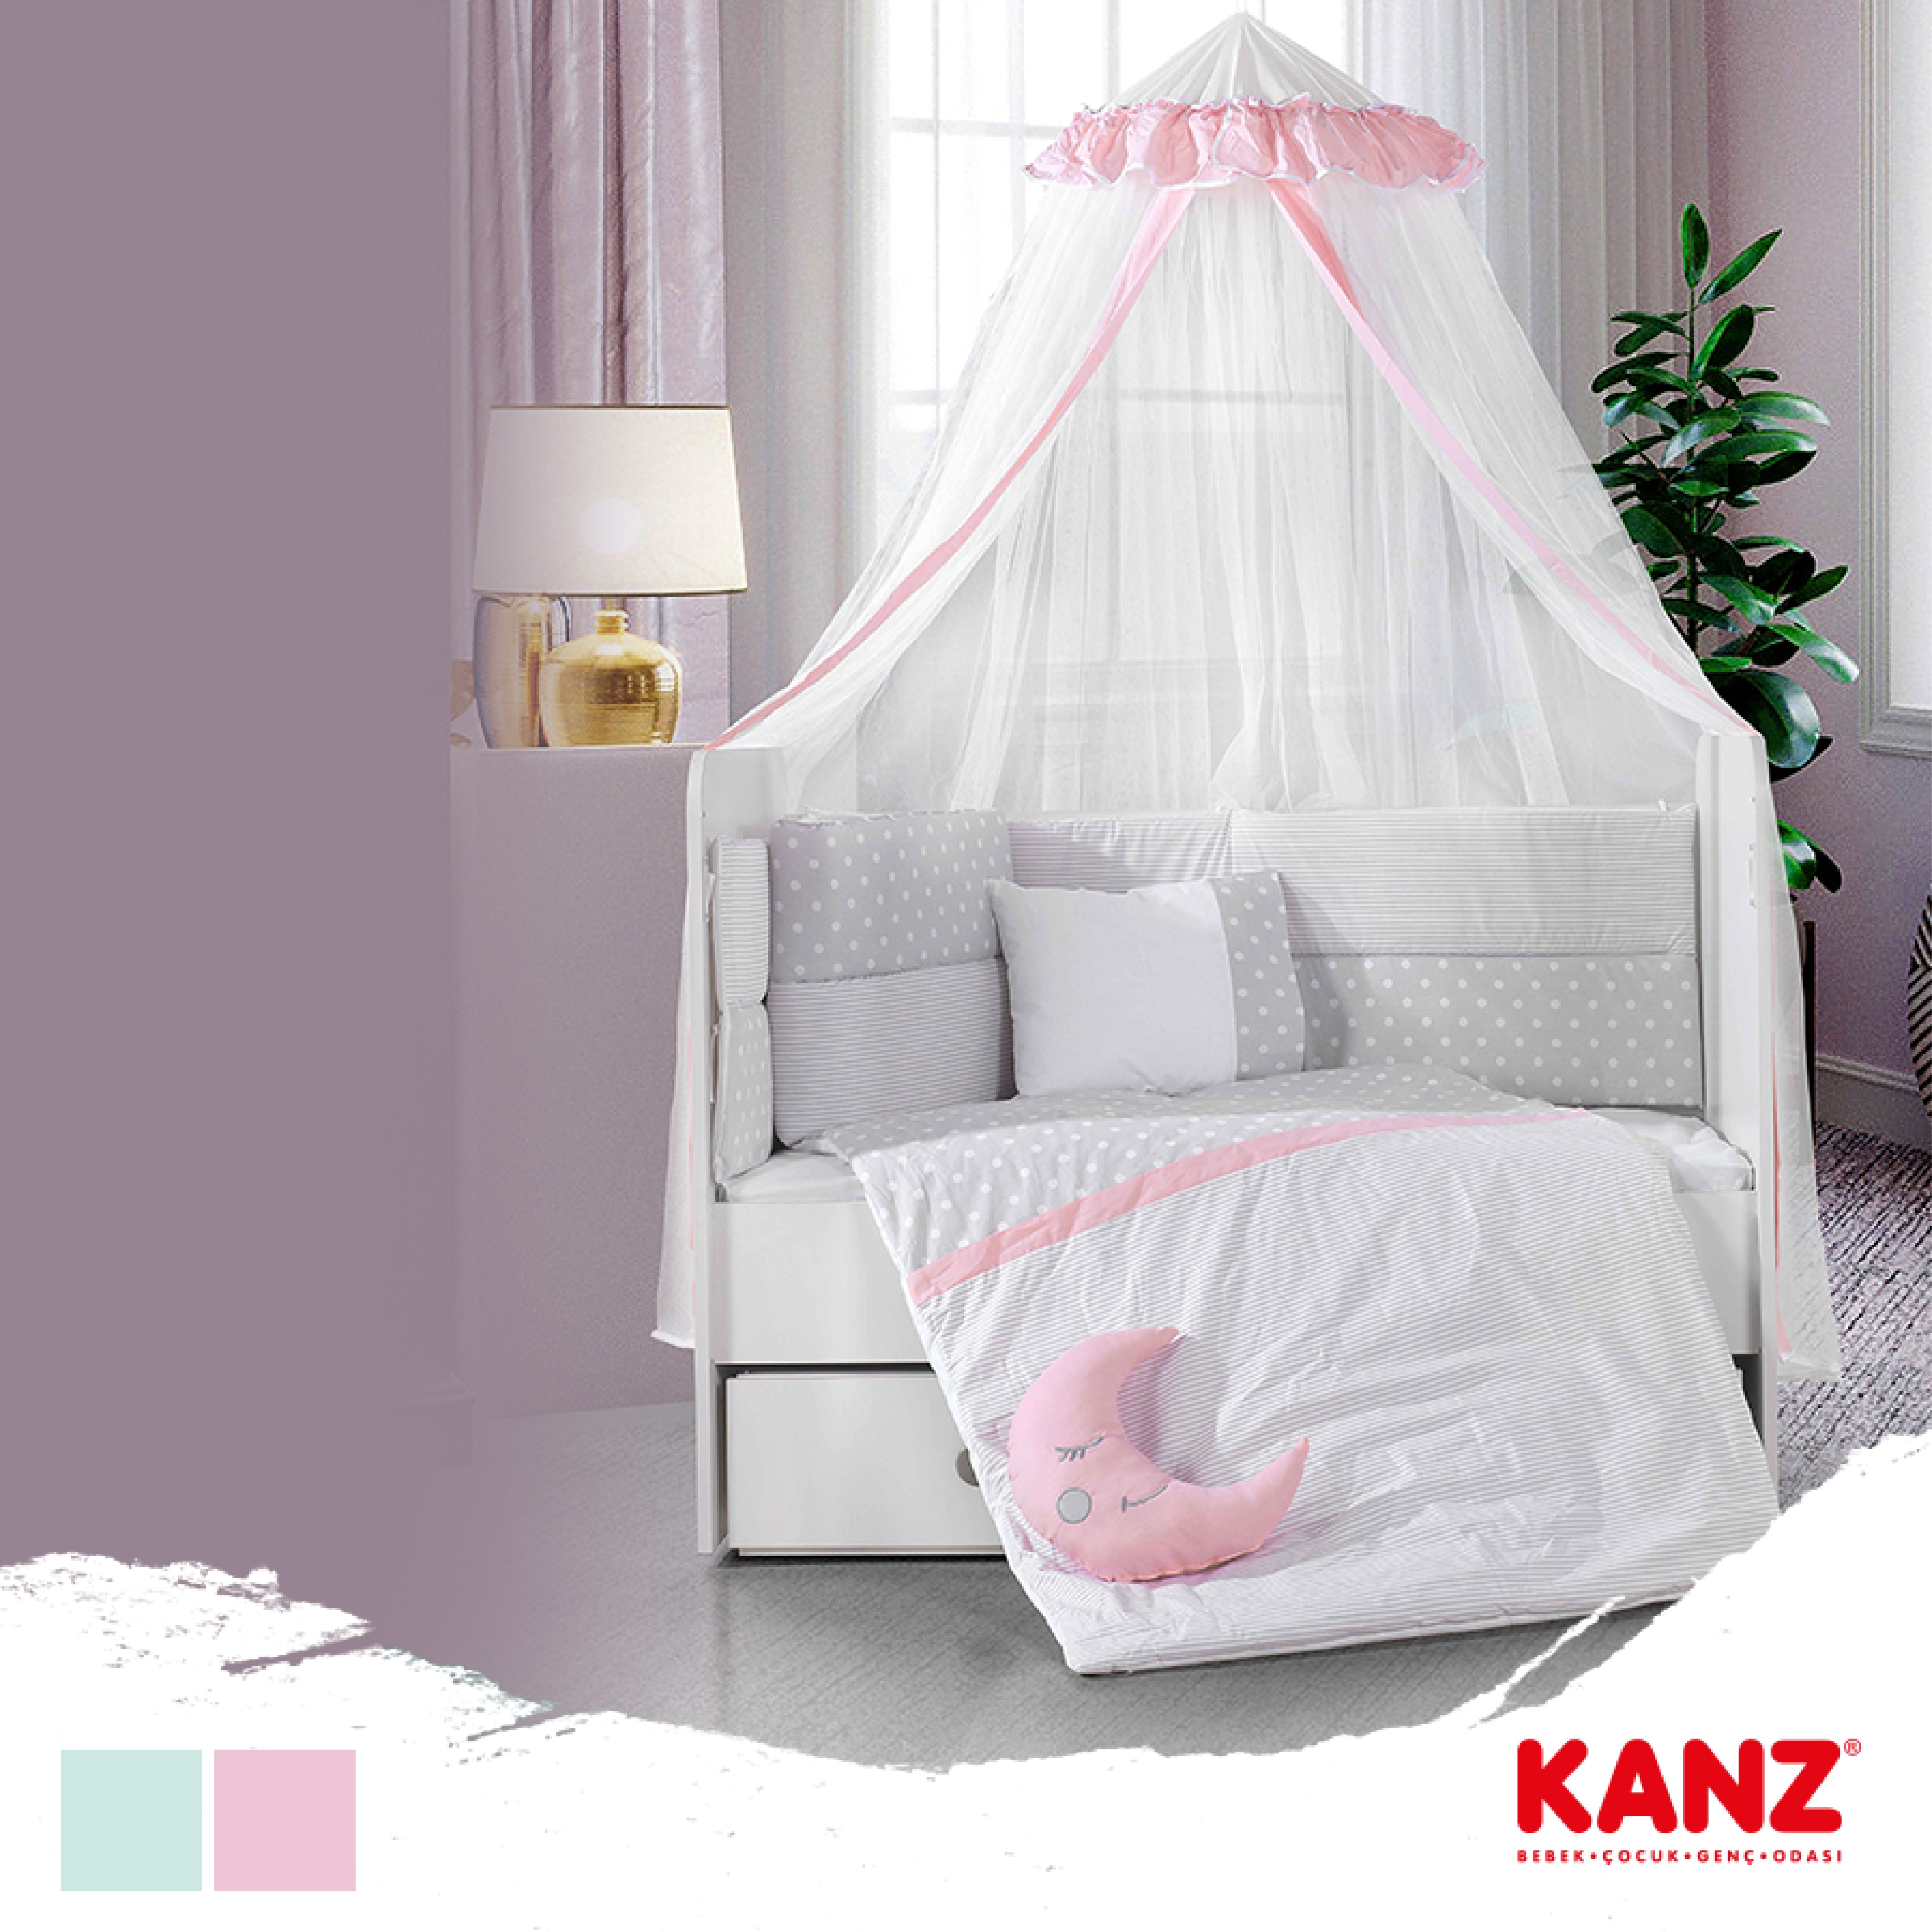 Kanz - Zuzu Sleeping Set